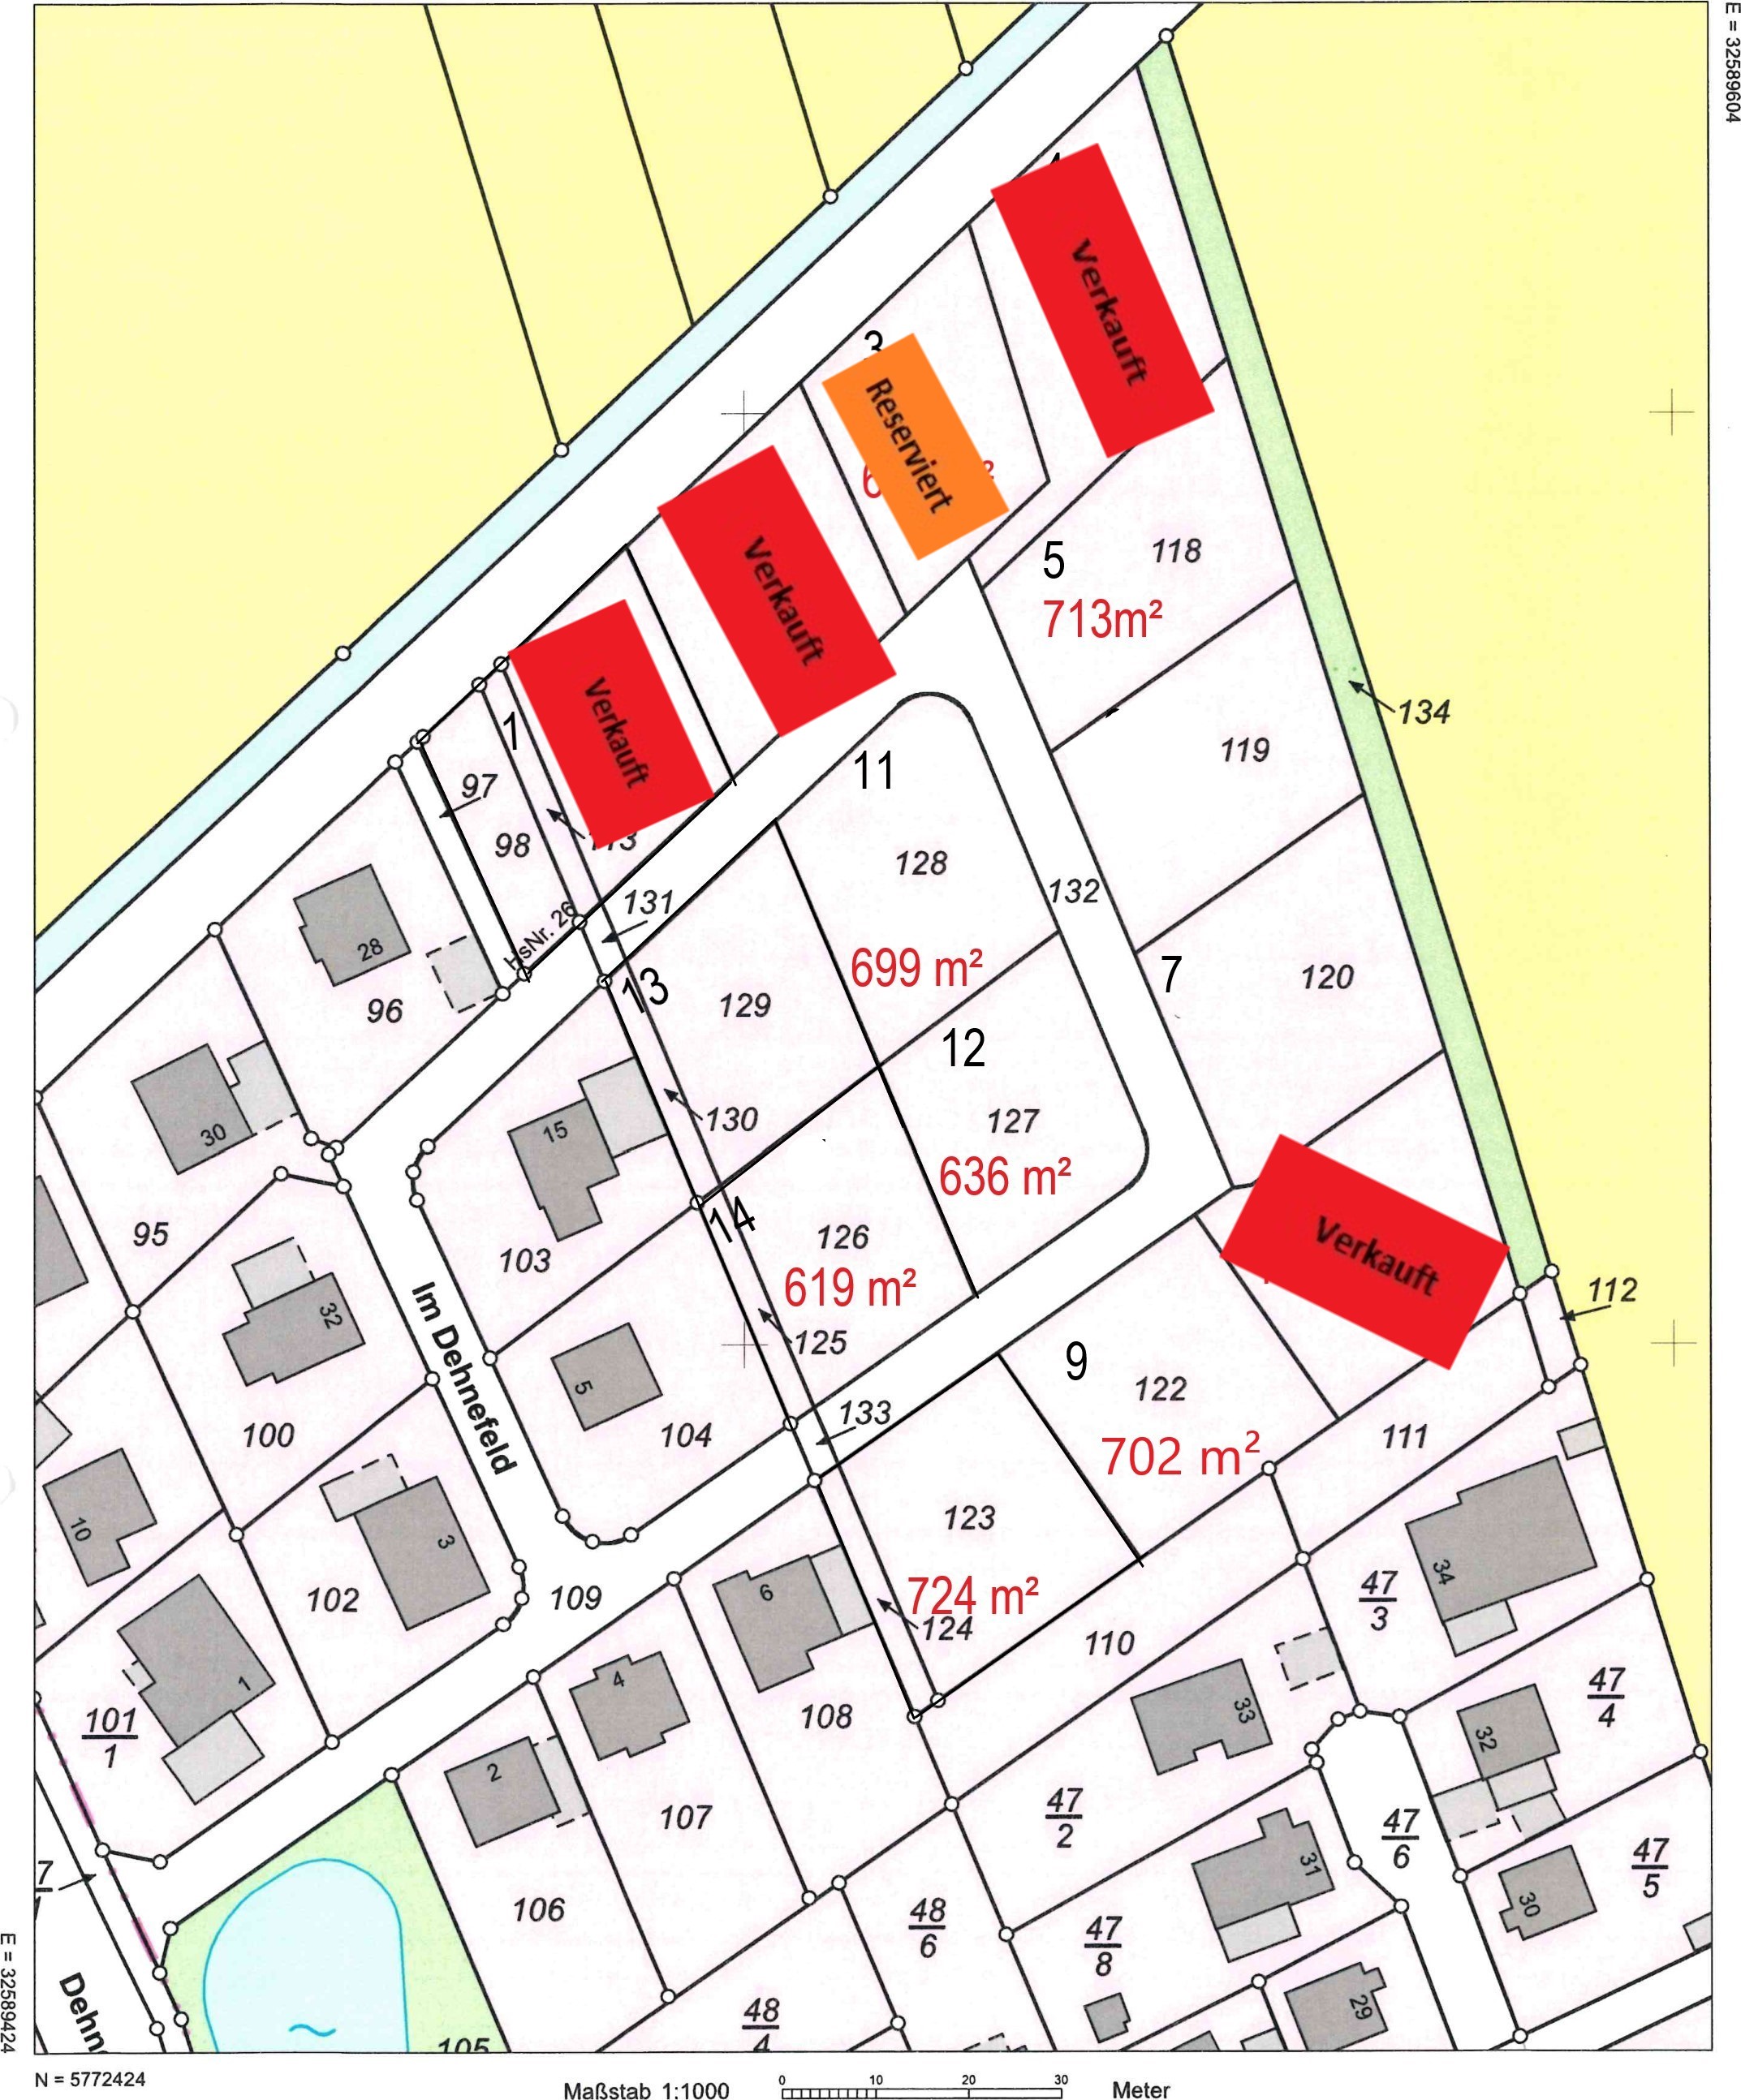 Bild vergrößern: Lageplan Baugebiet Dehnefeld